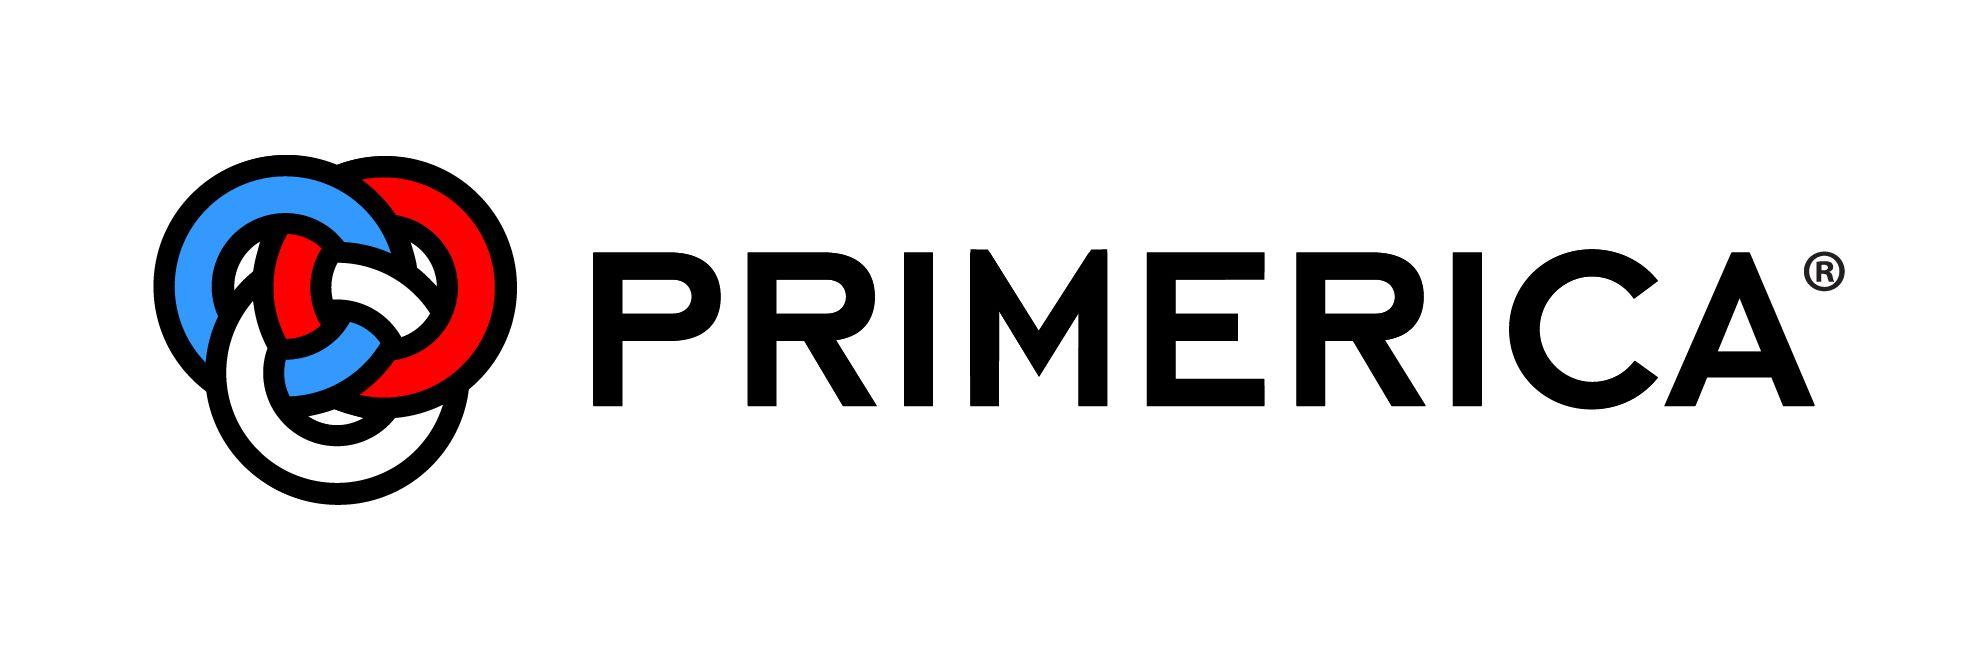 Prime America Logo - Primerica <span Aria Label=Pry Merica>Primerica</span> Logo